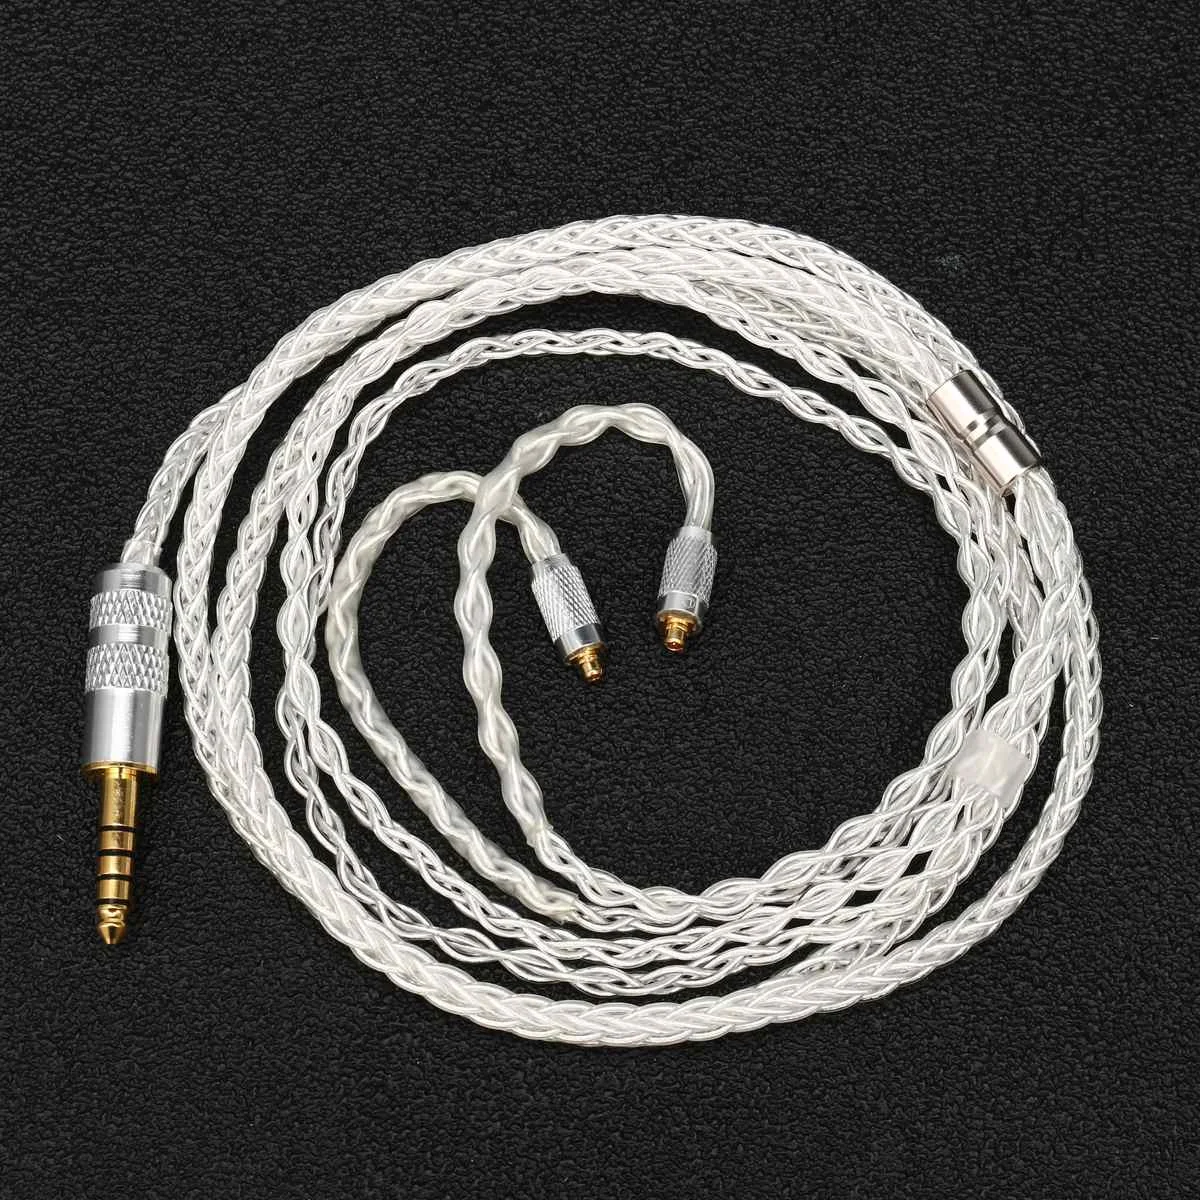 BGVP DM6 DMG 6N OCC 8 Core MMCX кабель для наушников Обновление 3,5 мм 4,4 мм 2,5 мм Балансирующий кабель аудиофил для SE864 FX1100 535 - Цвет: 4.4mm silver plated